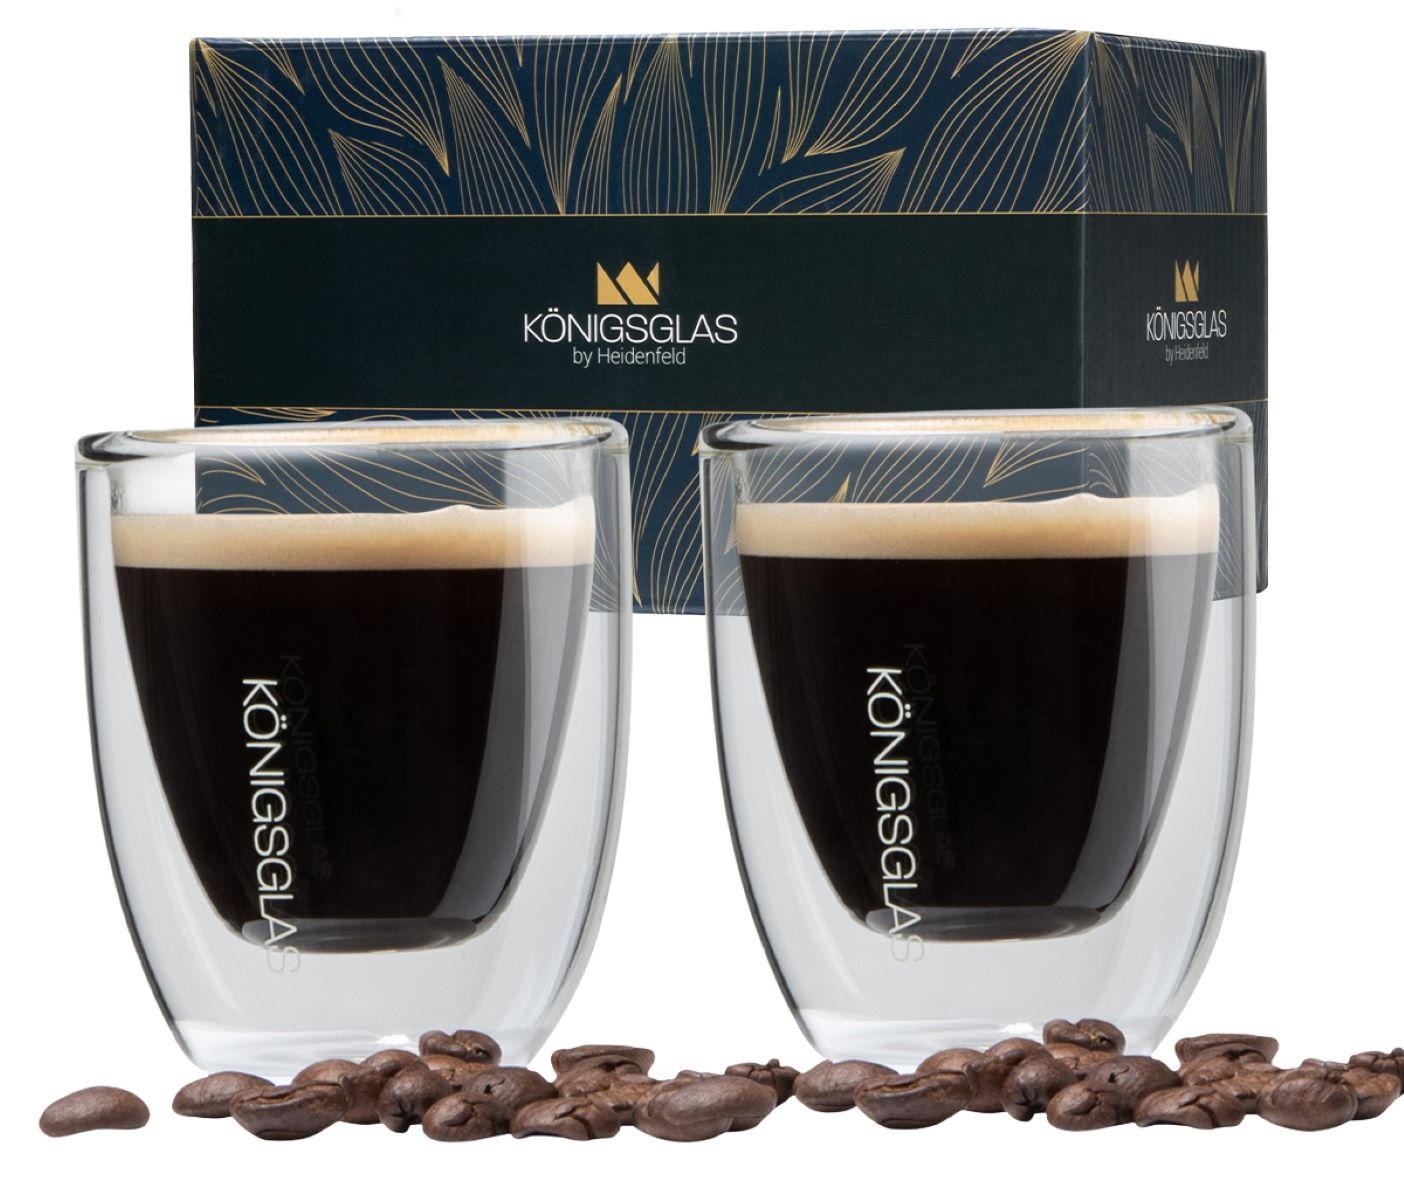 HEIDENFELD Königsglas 2x 80 Kaffeegläser Espresso ml